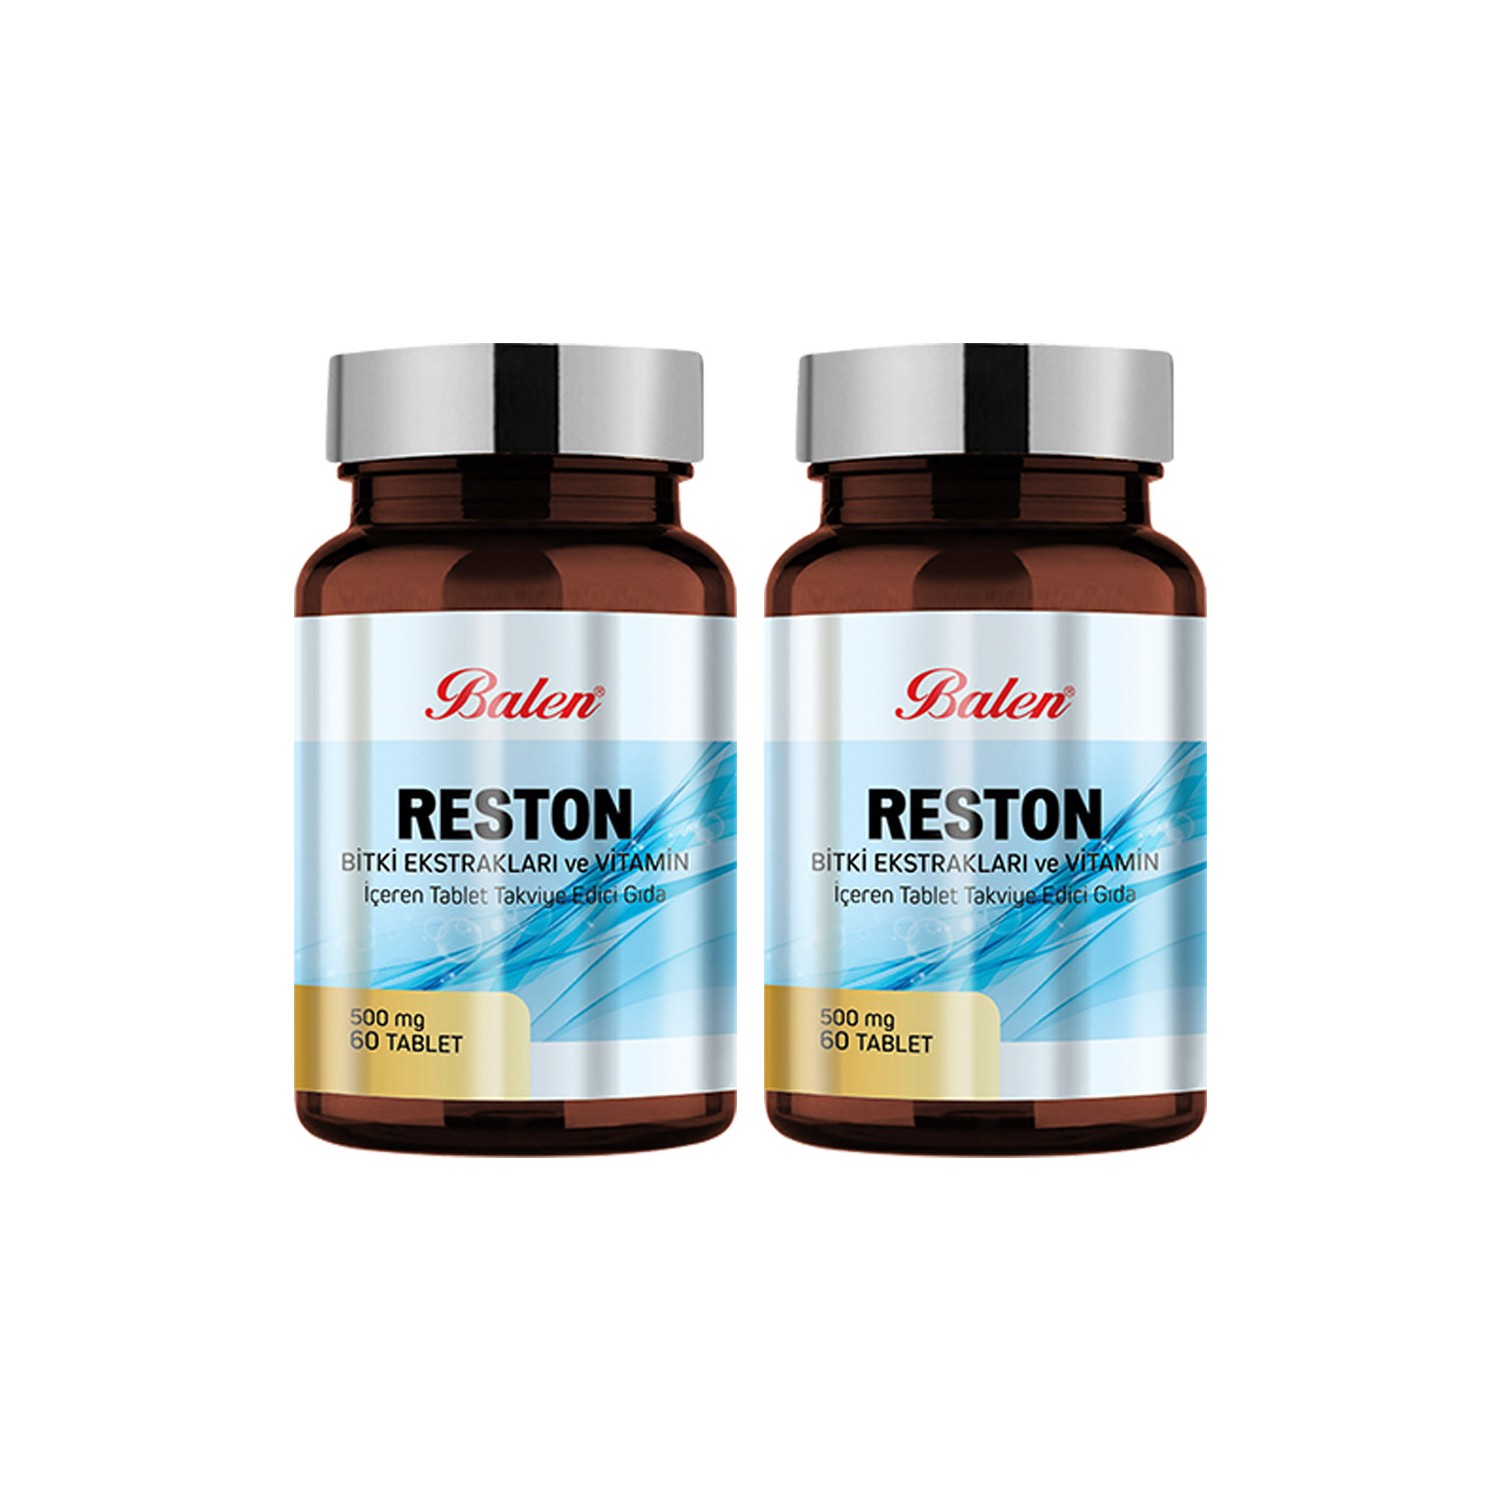 Пищевая добавка Balen Reston 500 мг, 2 упаковки по 60 капсул